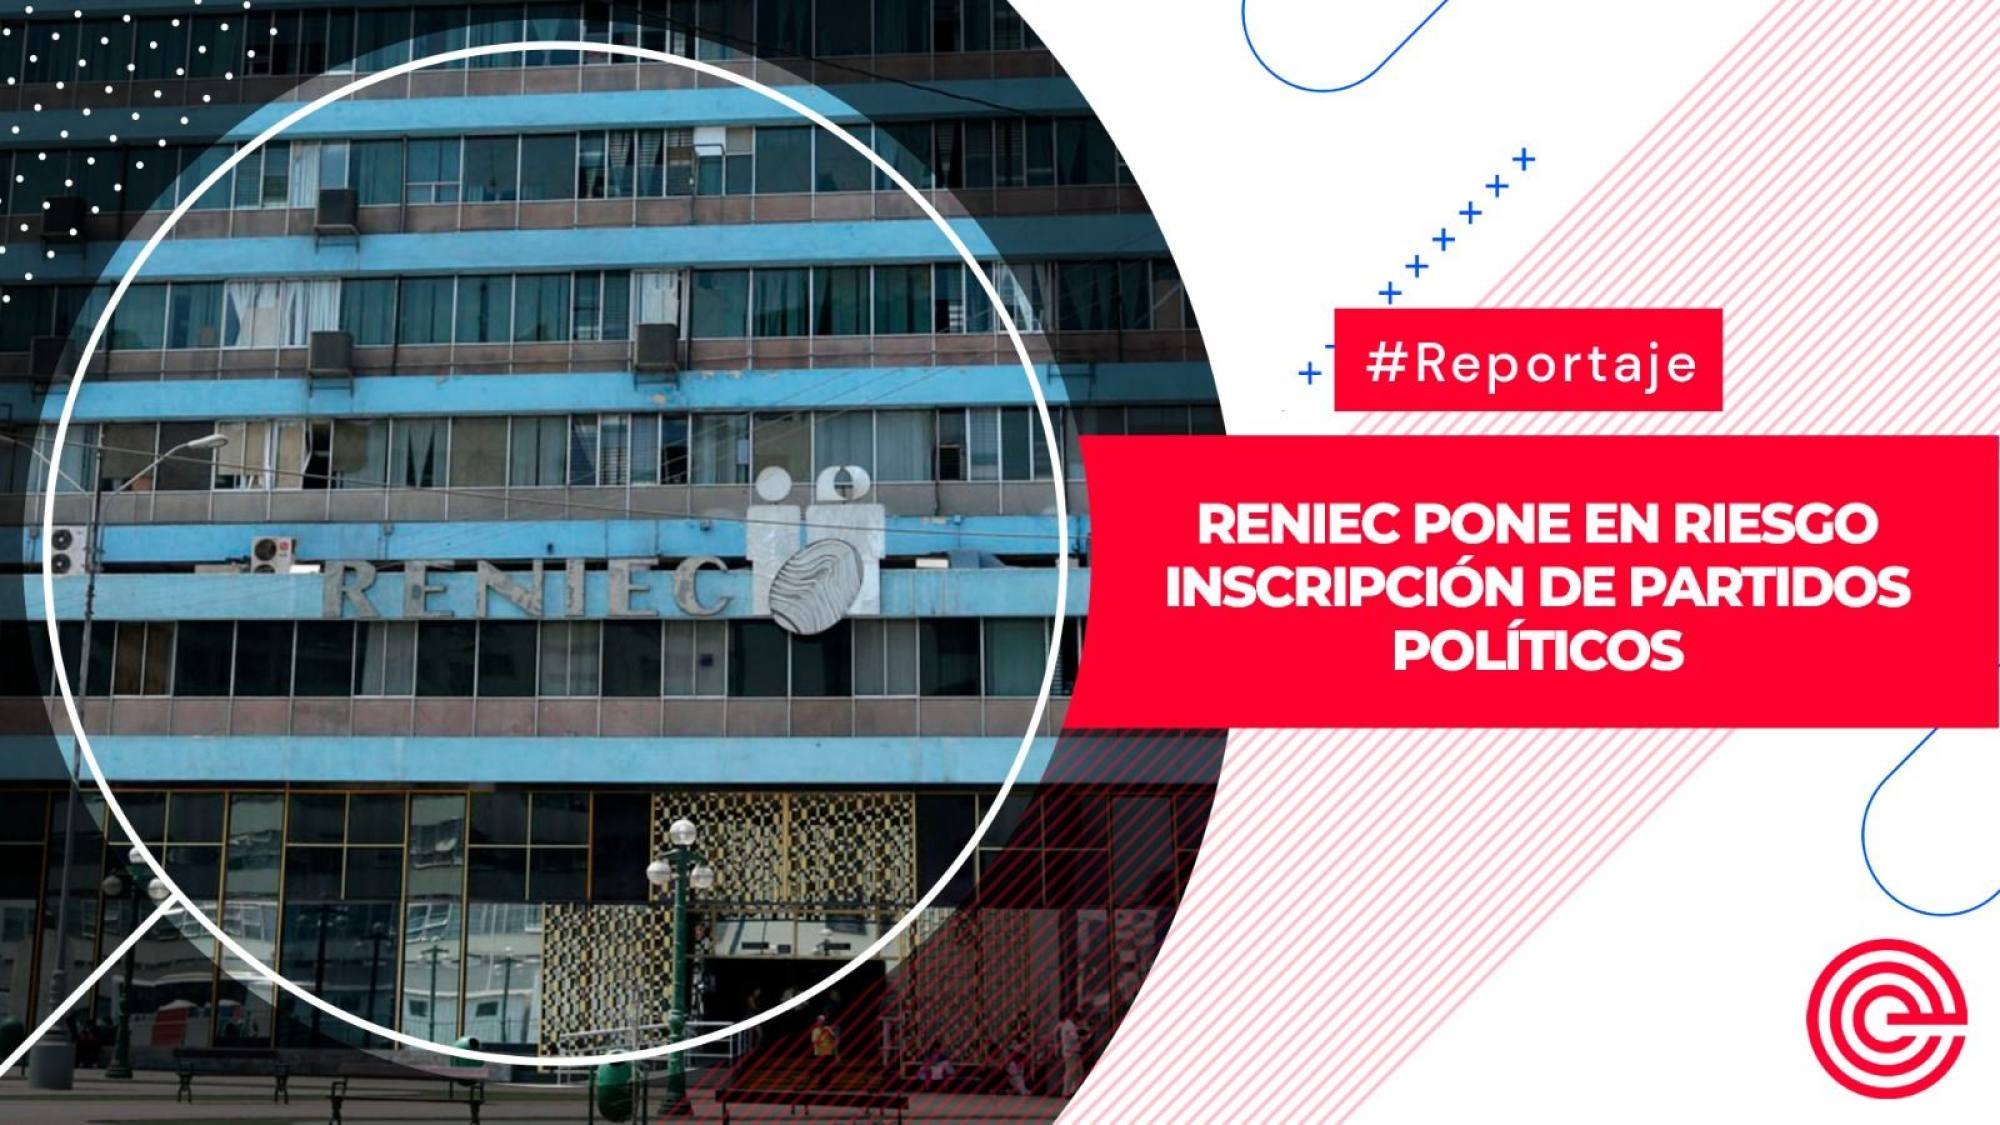 Reniec pone en riesgo inscripción de partidos políticos, Epicentro TV